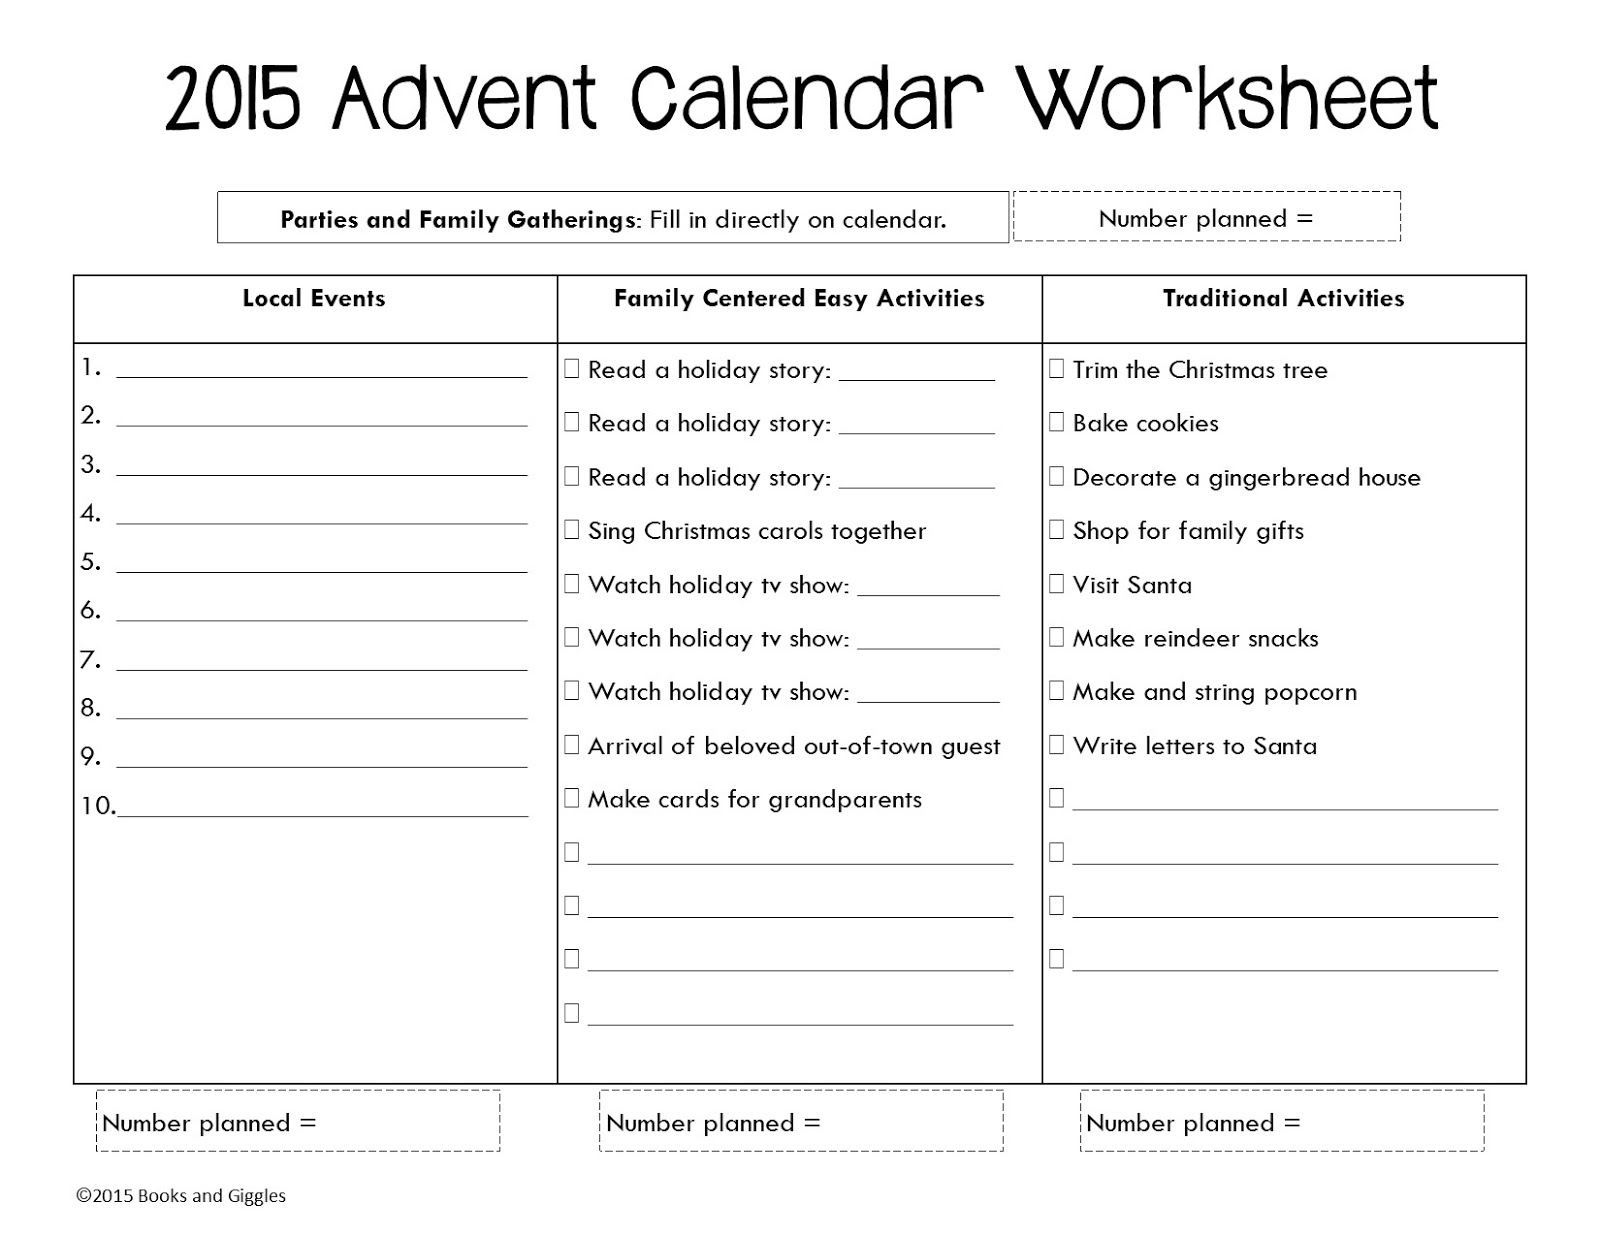 Adventure tasks. Задания для адвент календаря. Адвент календарь Worksheets. Advent Worksheets. Advent Calendar with tasks.